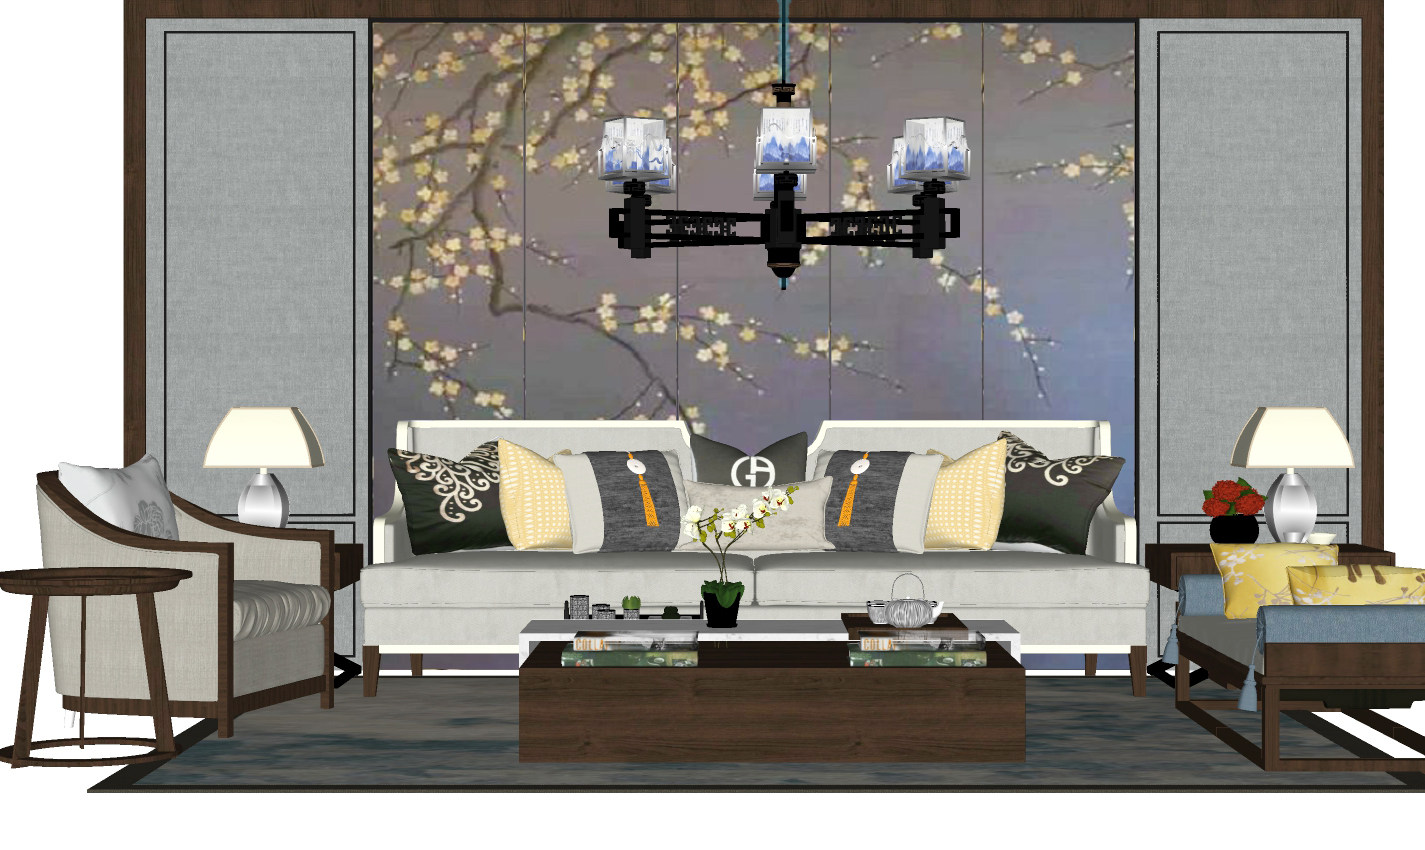 新中式沙发茶几组合 罗汉床 摆件组合 吊灯 背景墙